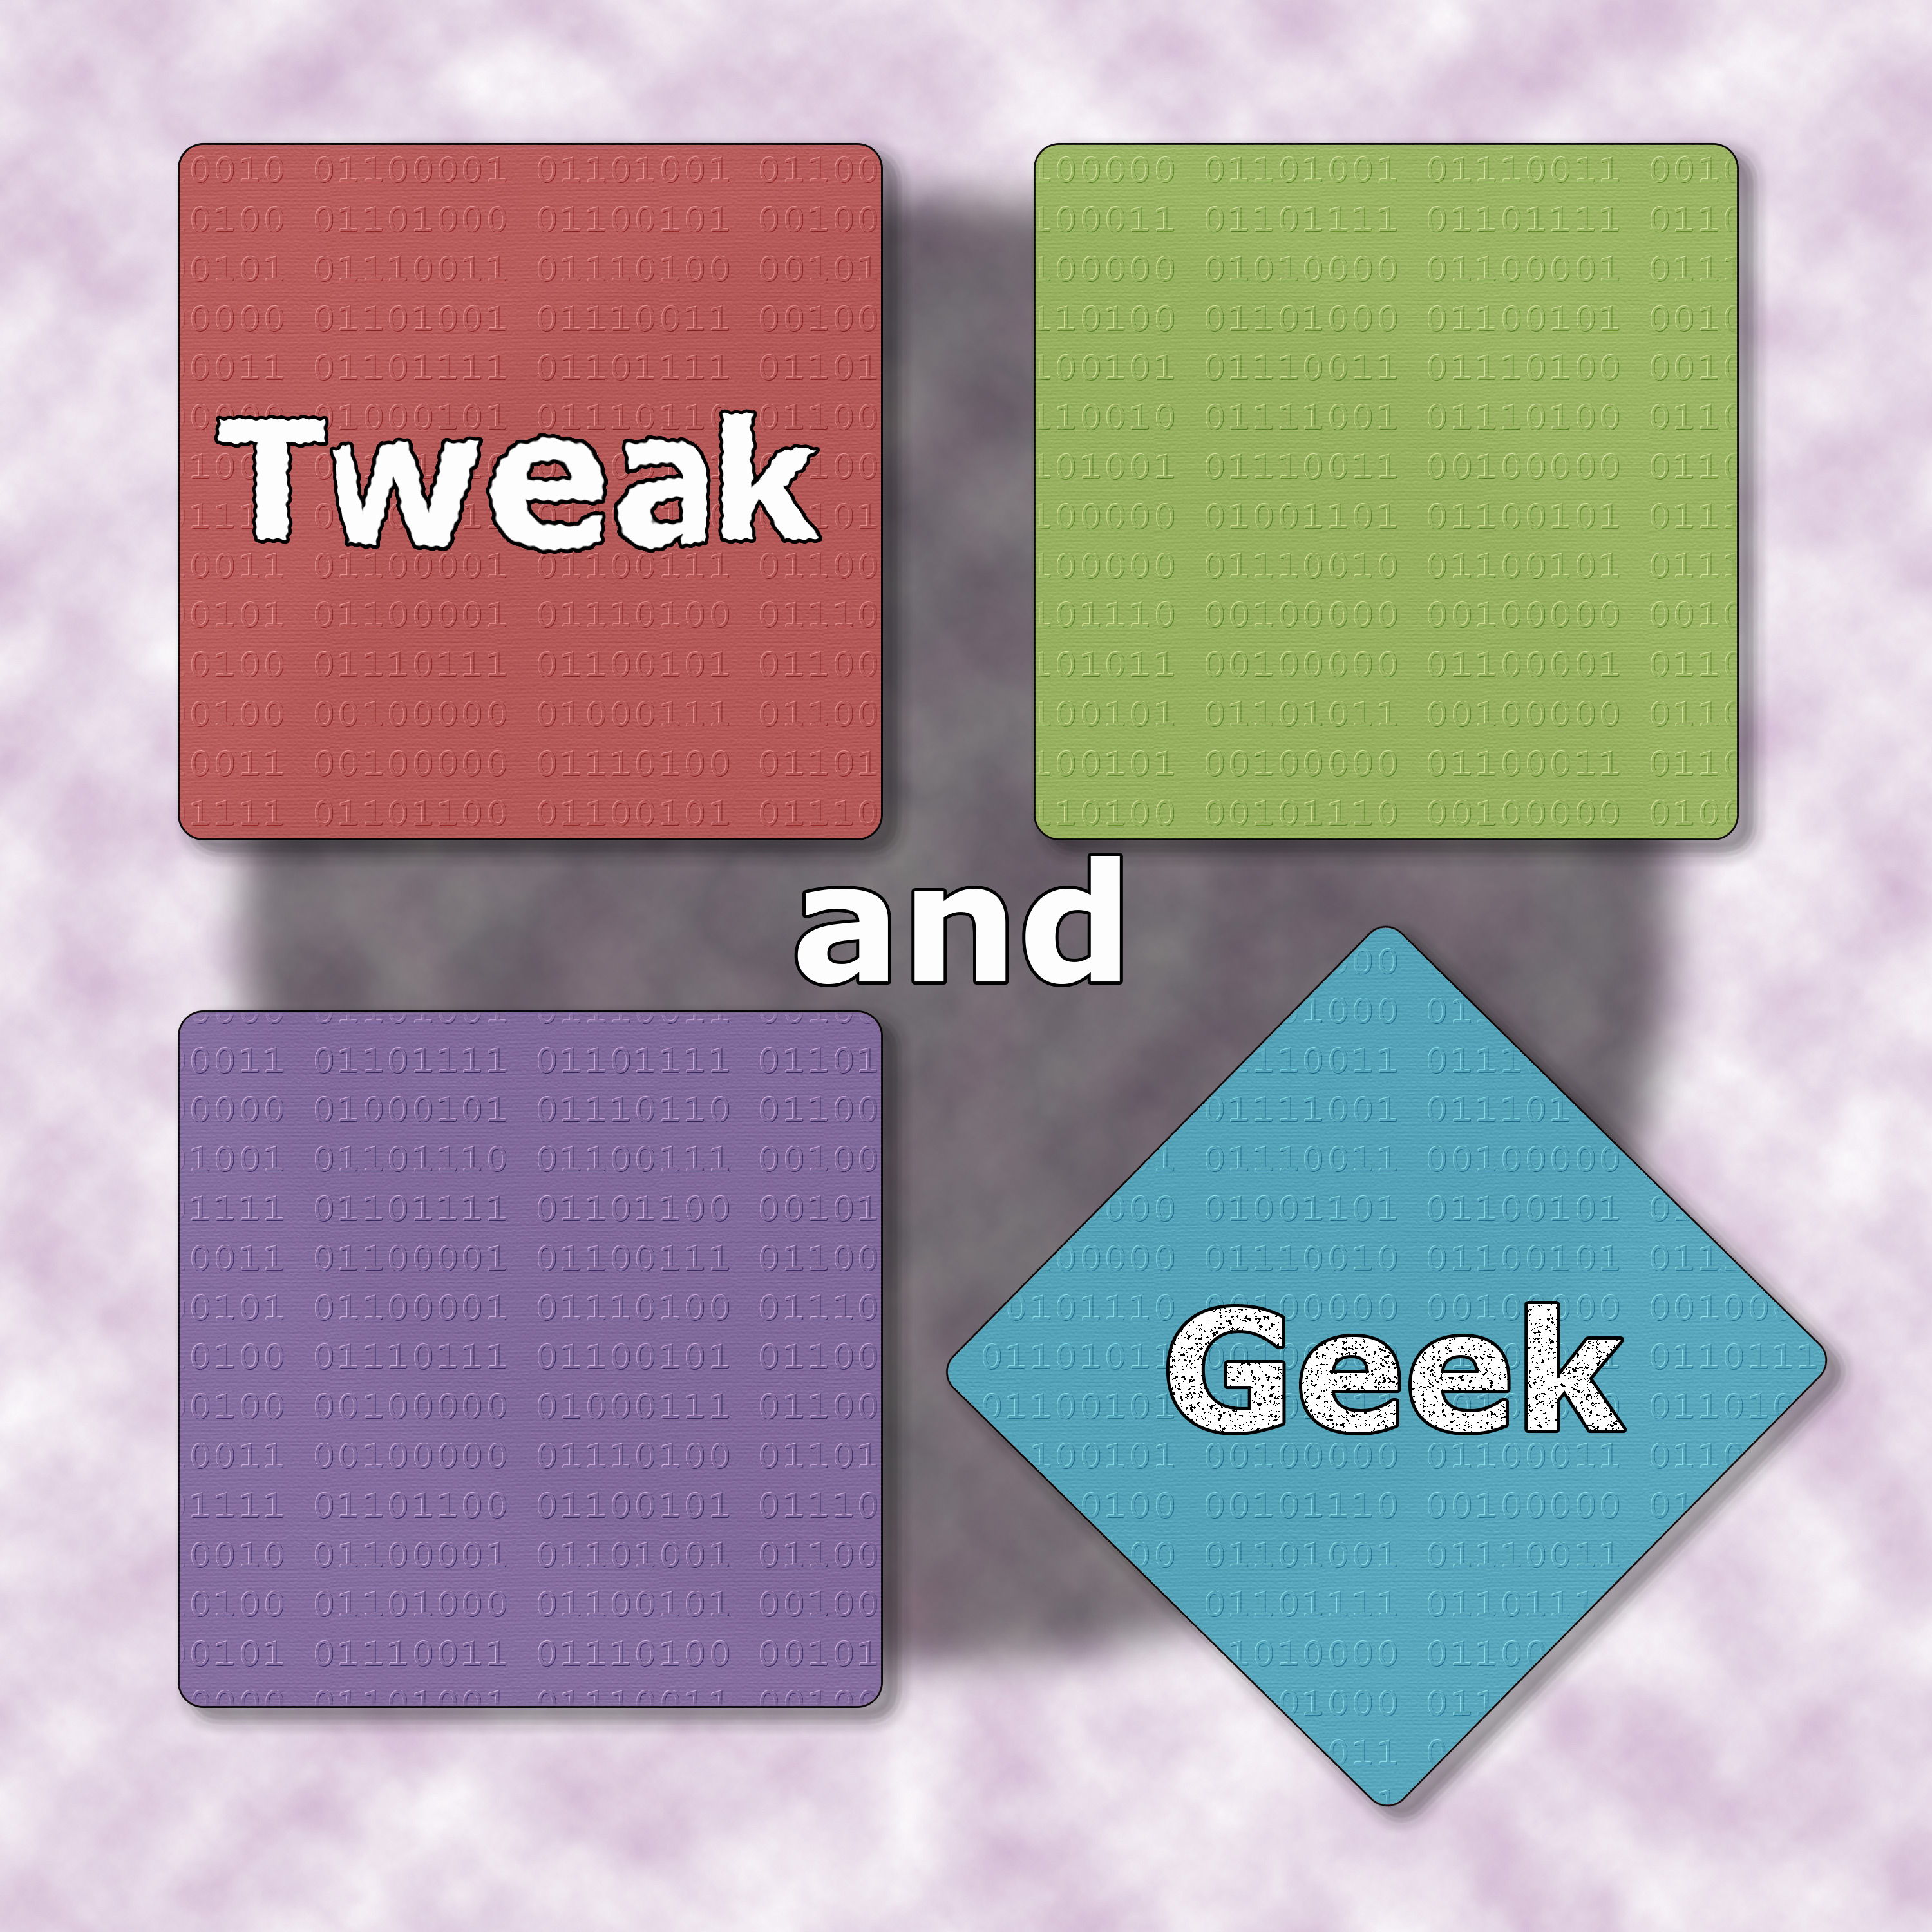 Tweak and Geek